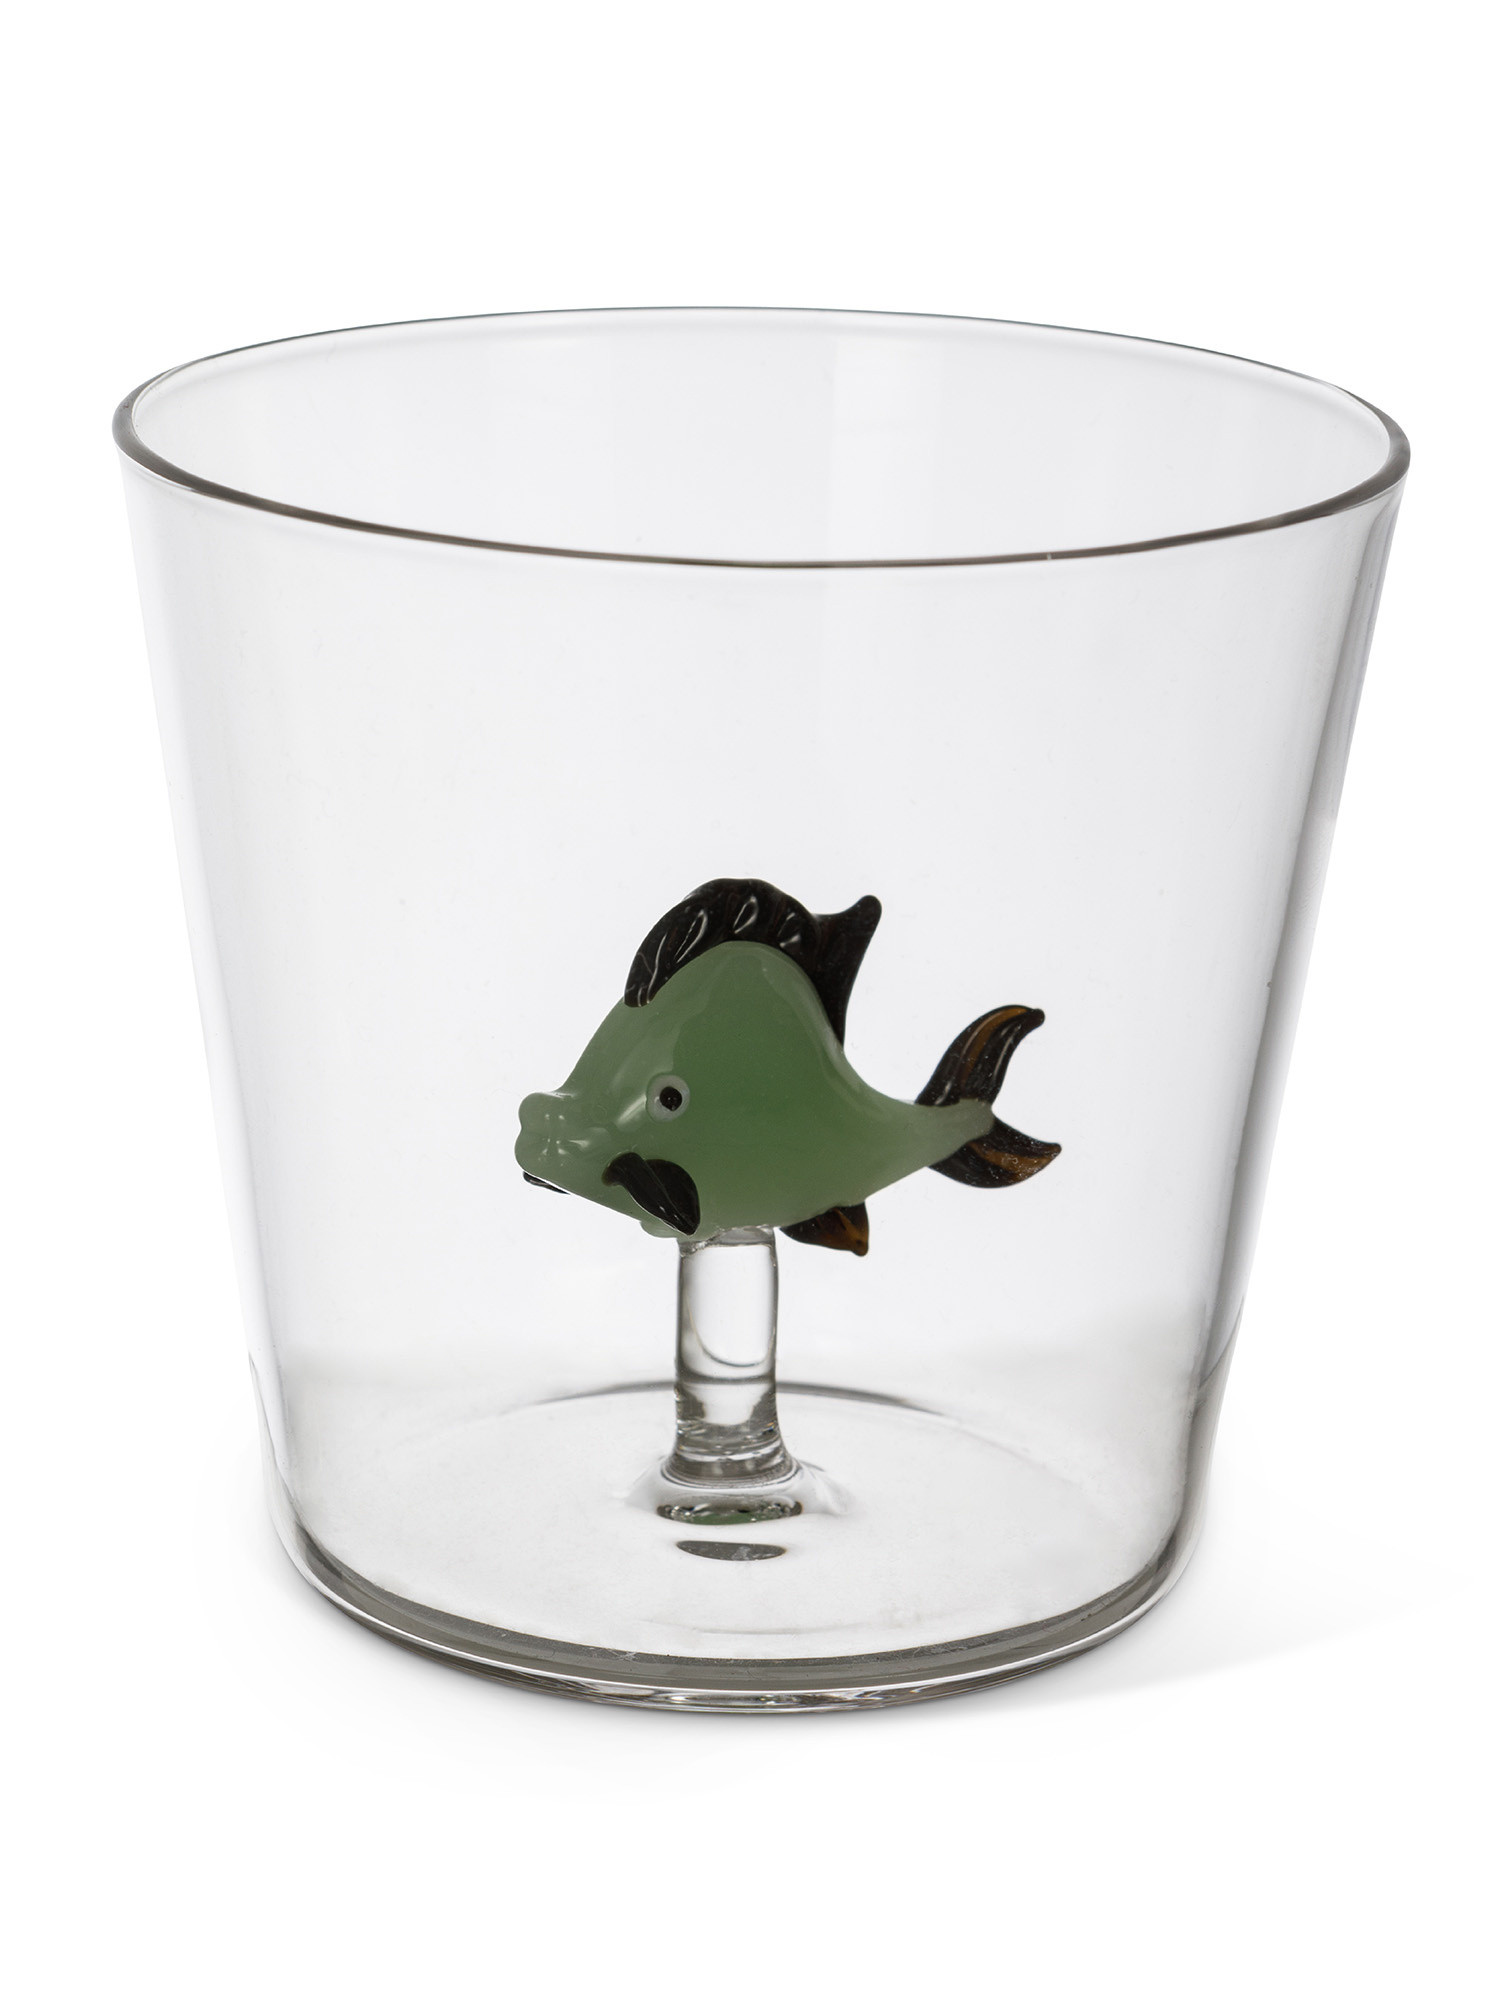 Bicchiere in vetro dettaglio pesce verde, Trasparente, large image number 1